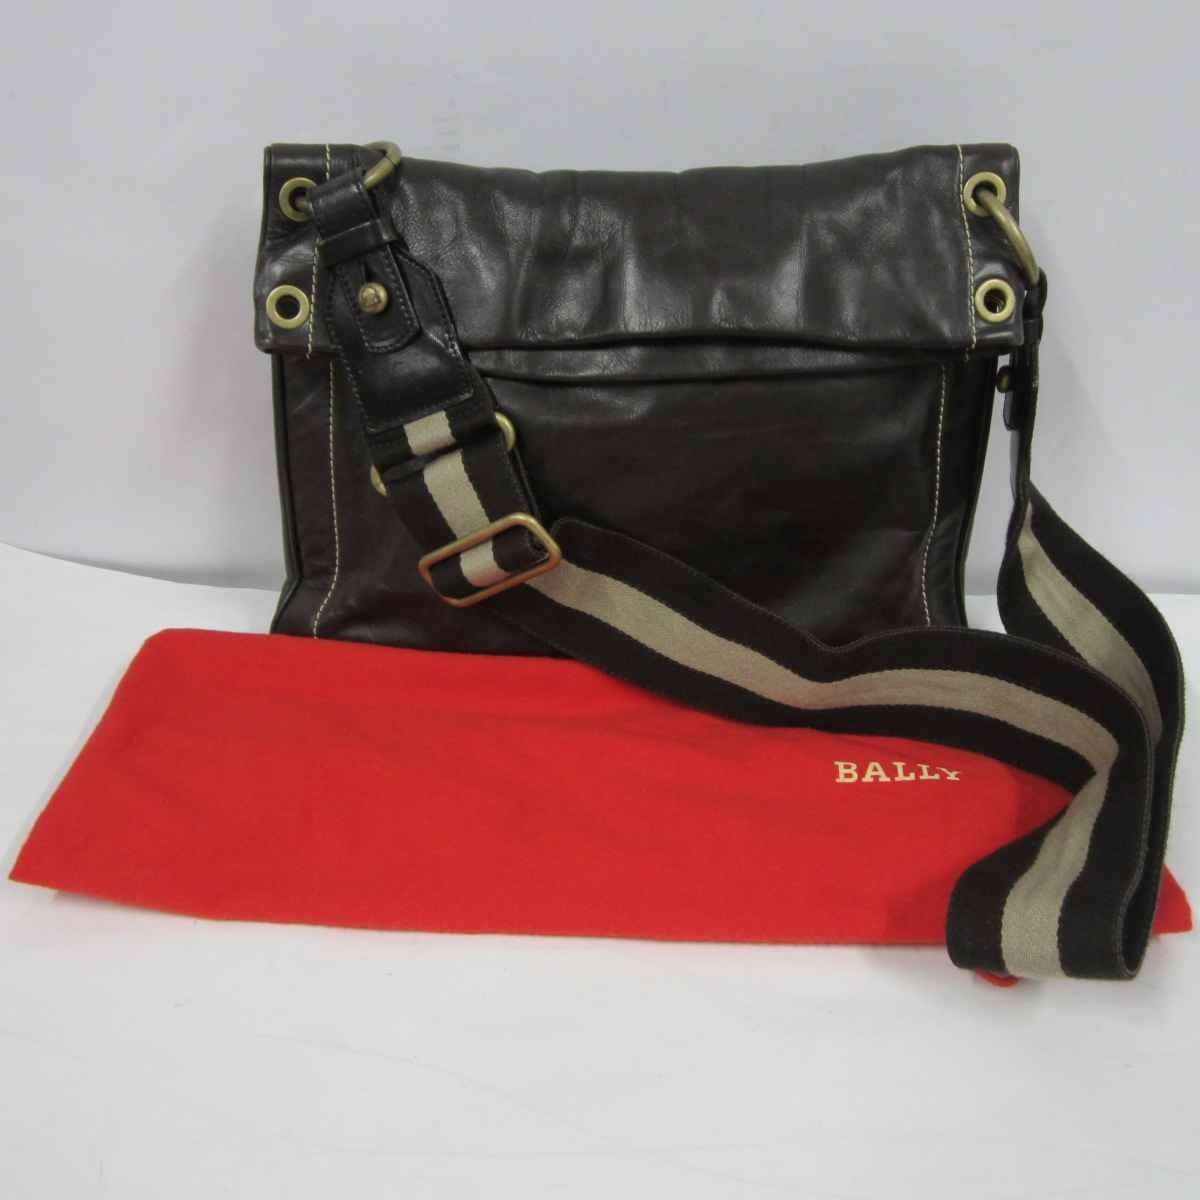 【保存袋あり】BALLY TRENSA ショルダーバッグ＜バッグ＞バリー メンズ ブランド レザー ブラウン系 クロスショルダー ポケットあり